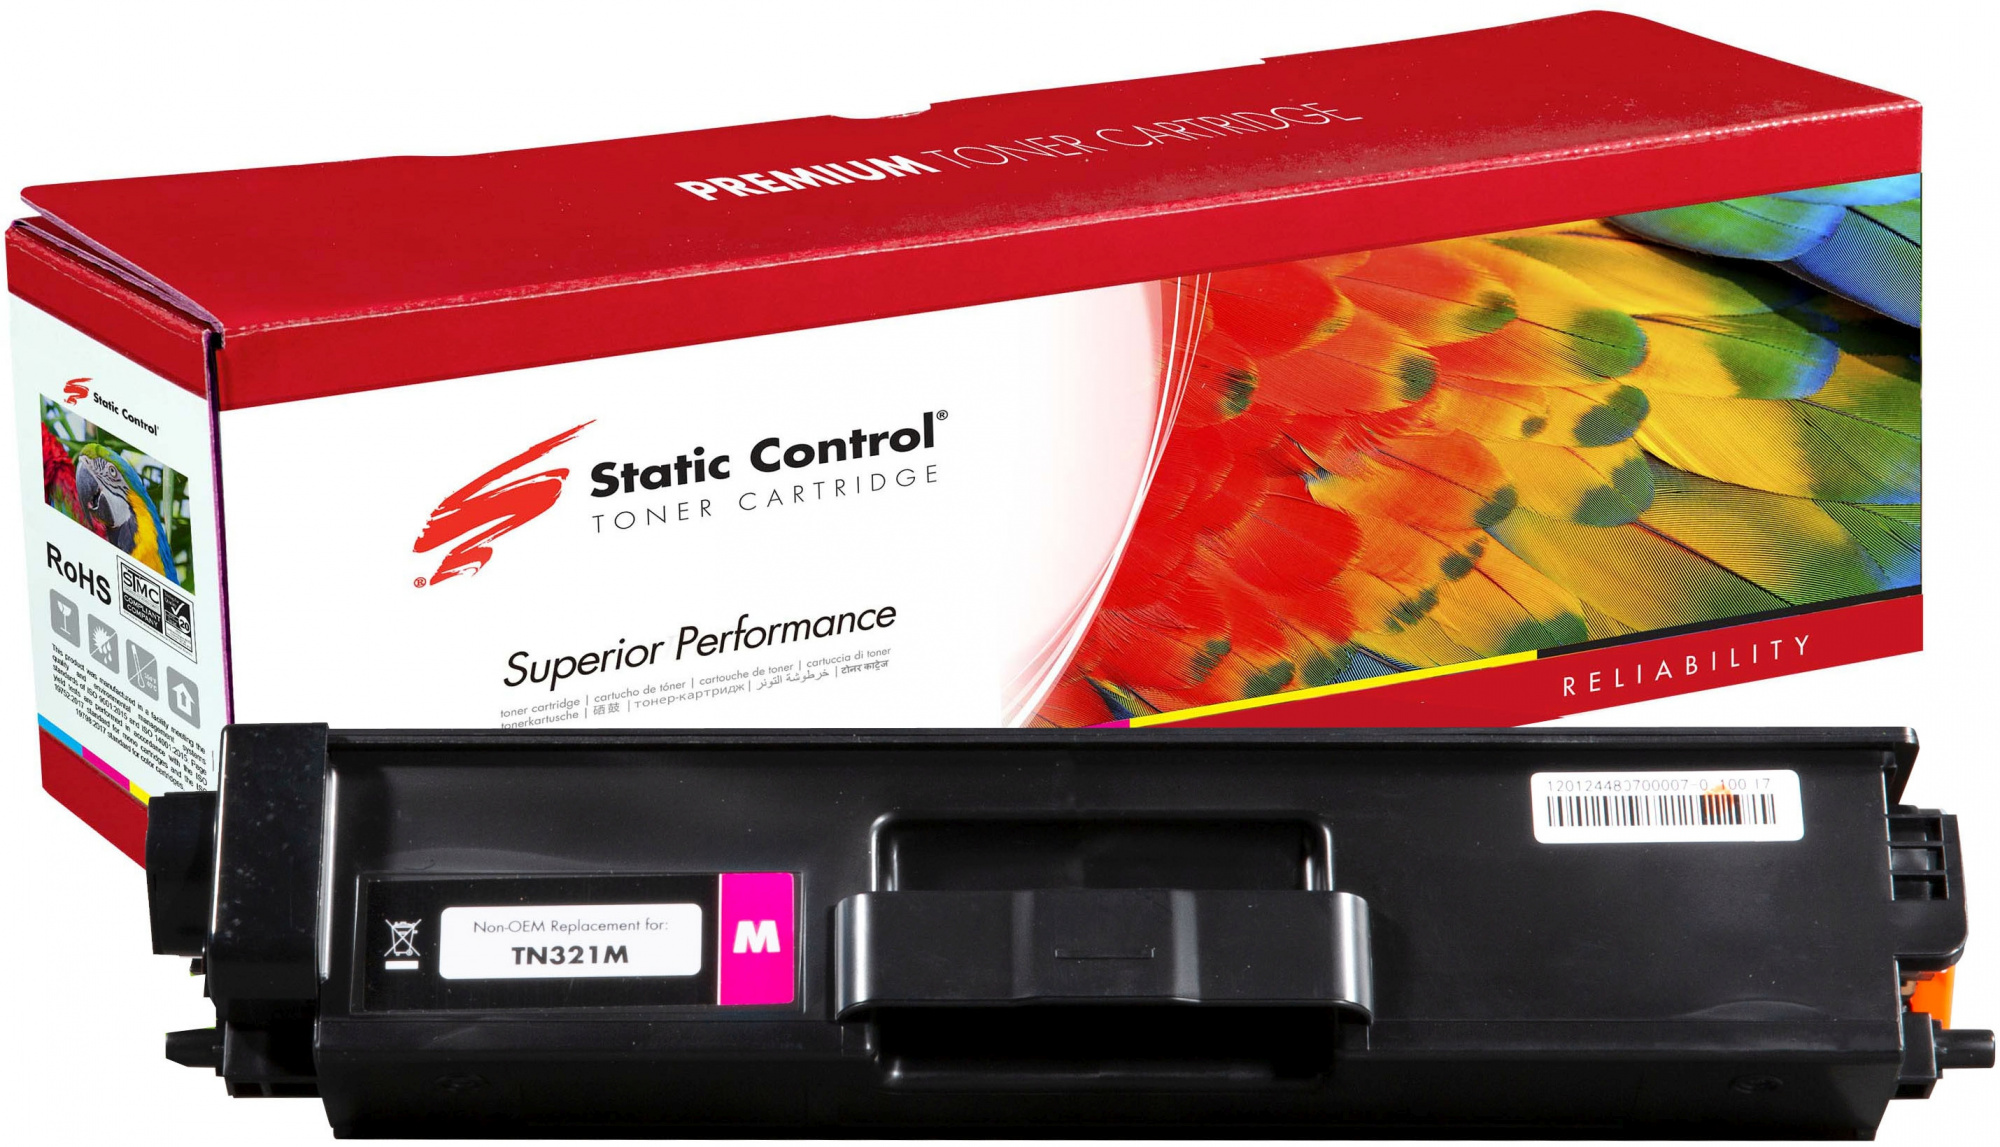 Картридж лазерный Static Control 002-13-R321M TN321M пурпурный (25000стр.) для Konica Minolta bizhub C224/C224e/C284/C28